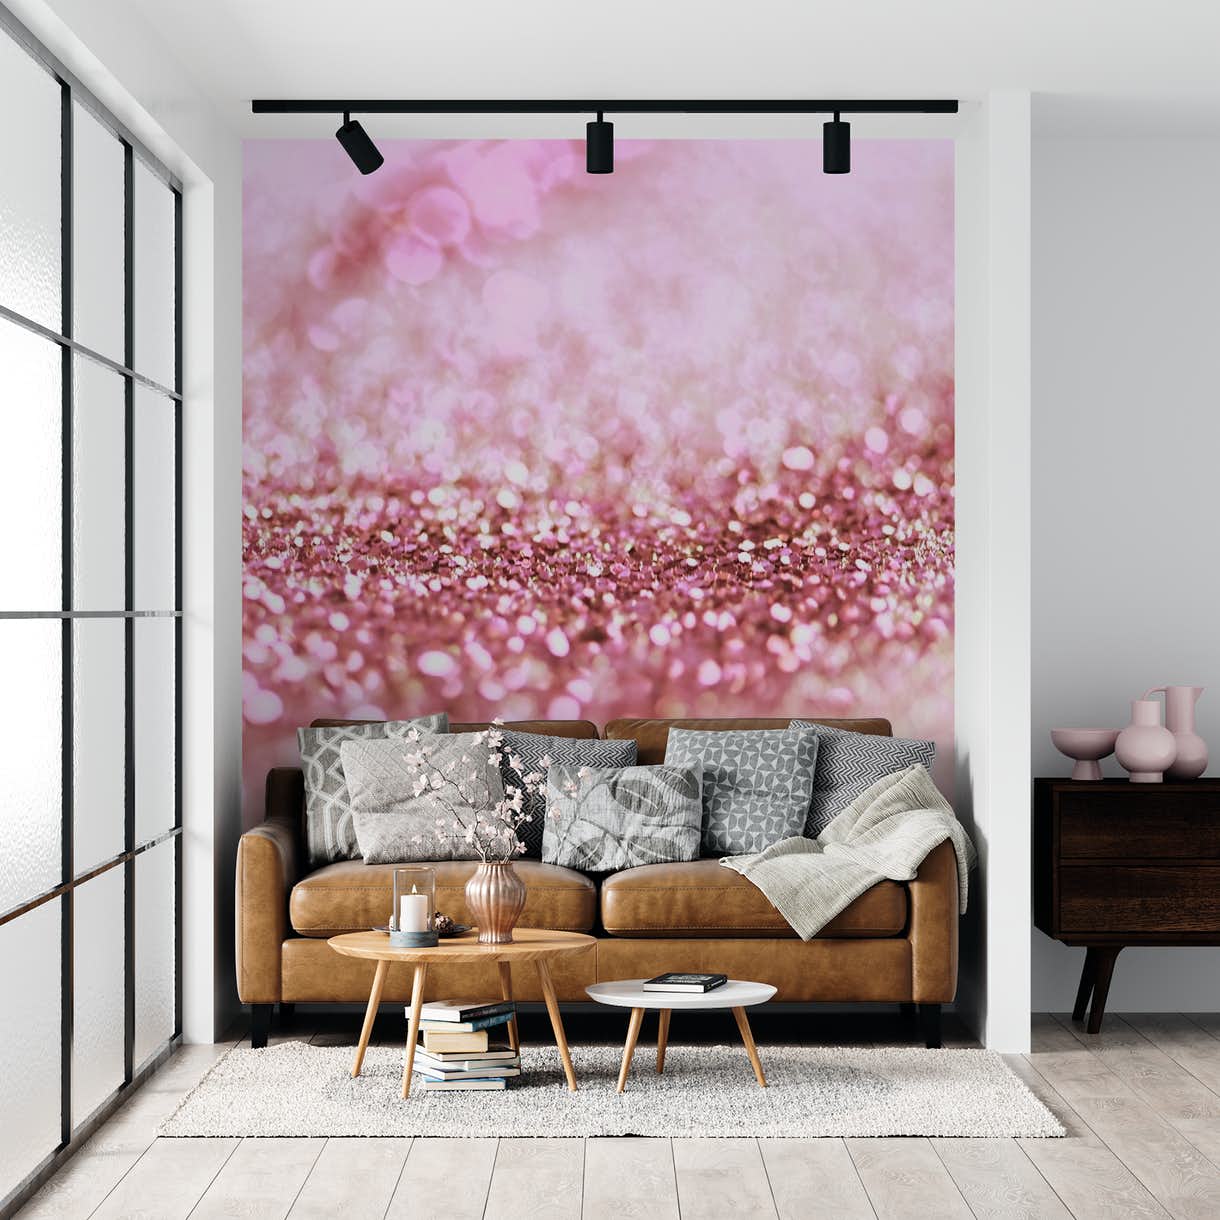 Pink Glitter Unicorn Wallpapers